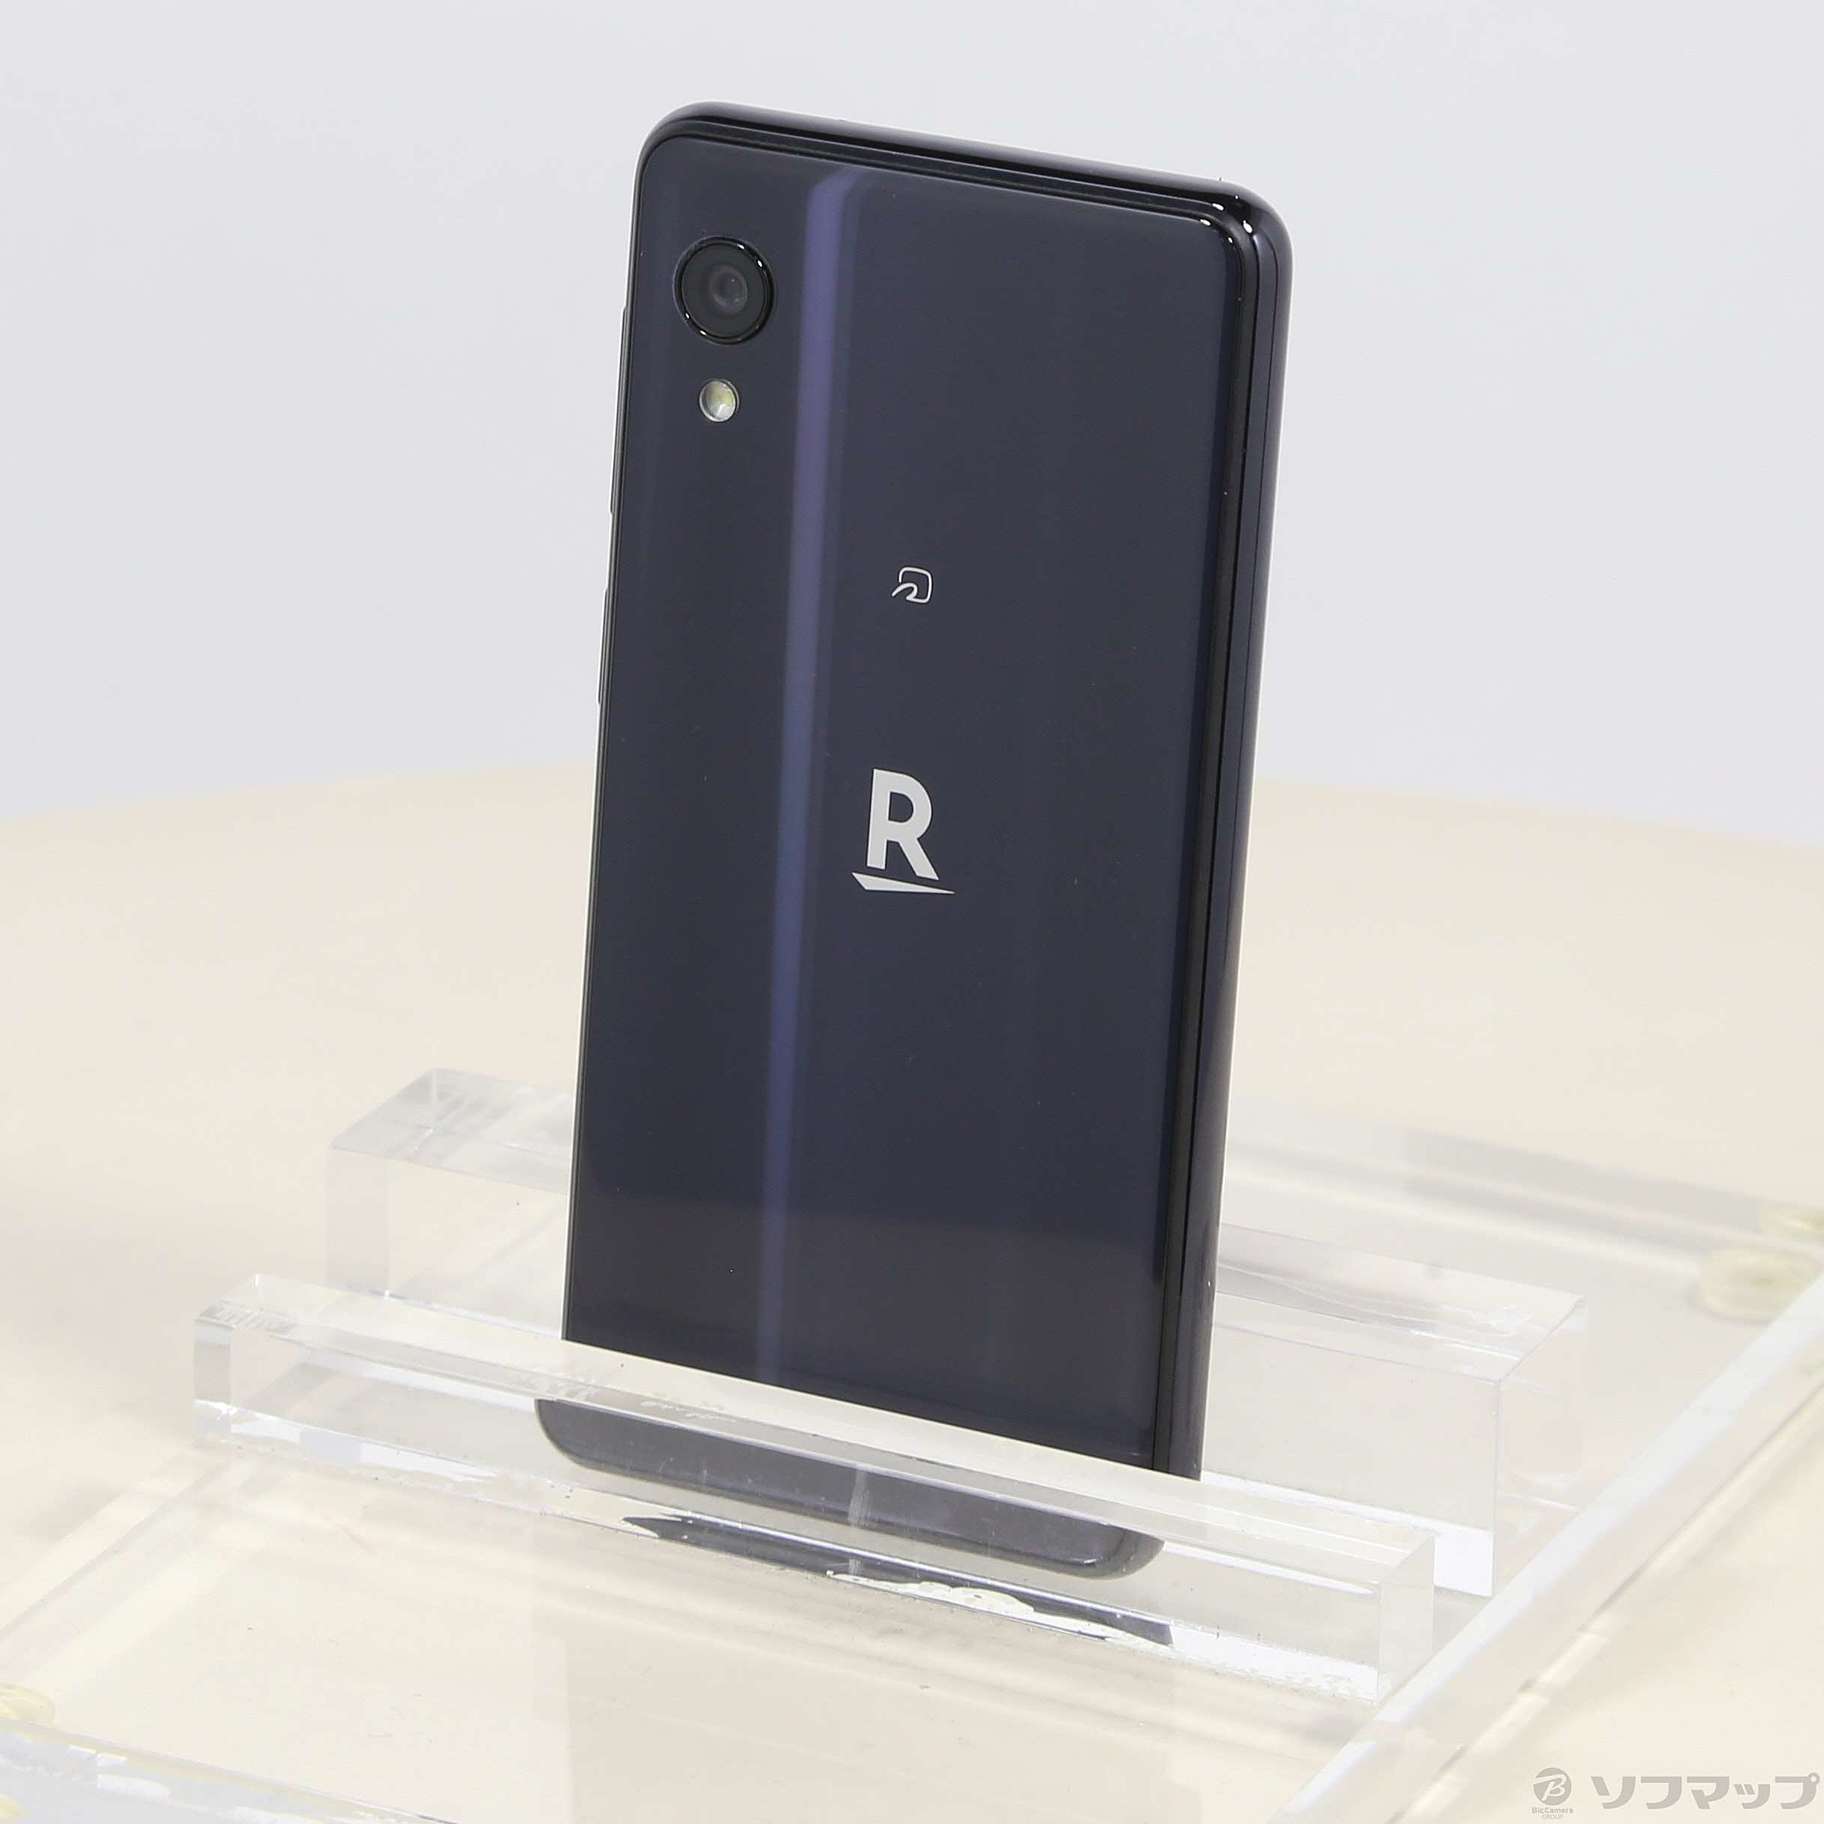 Rakuten Mini ナイトブラック 32 GB - スマートフォン本体